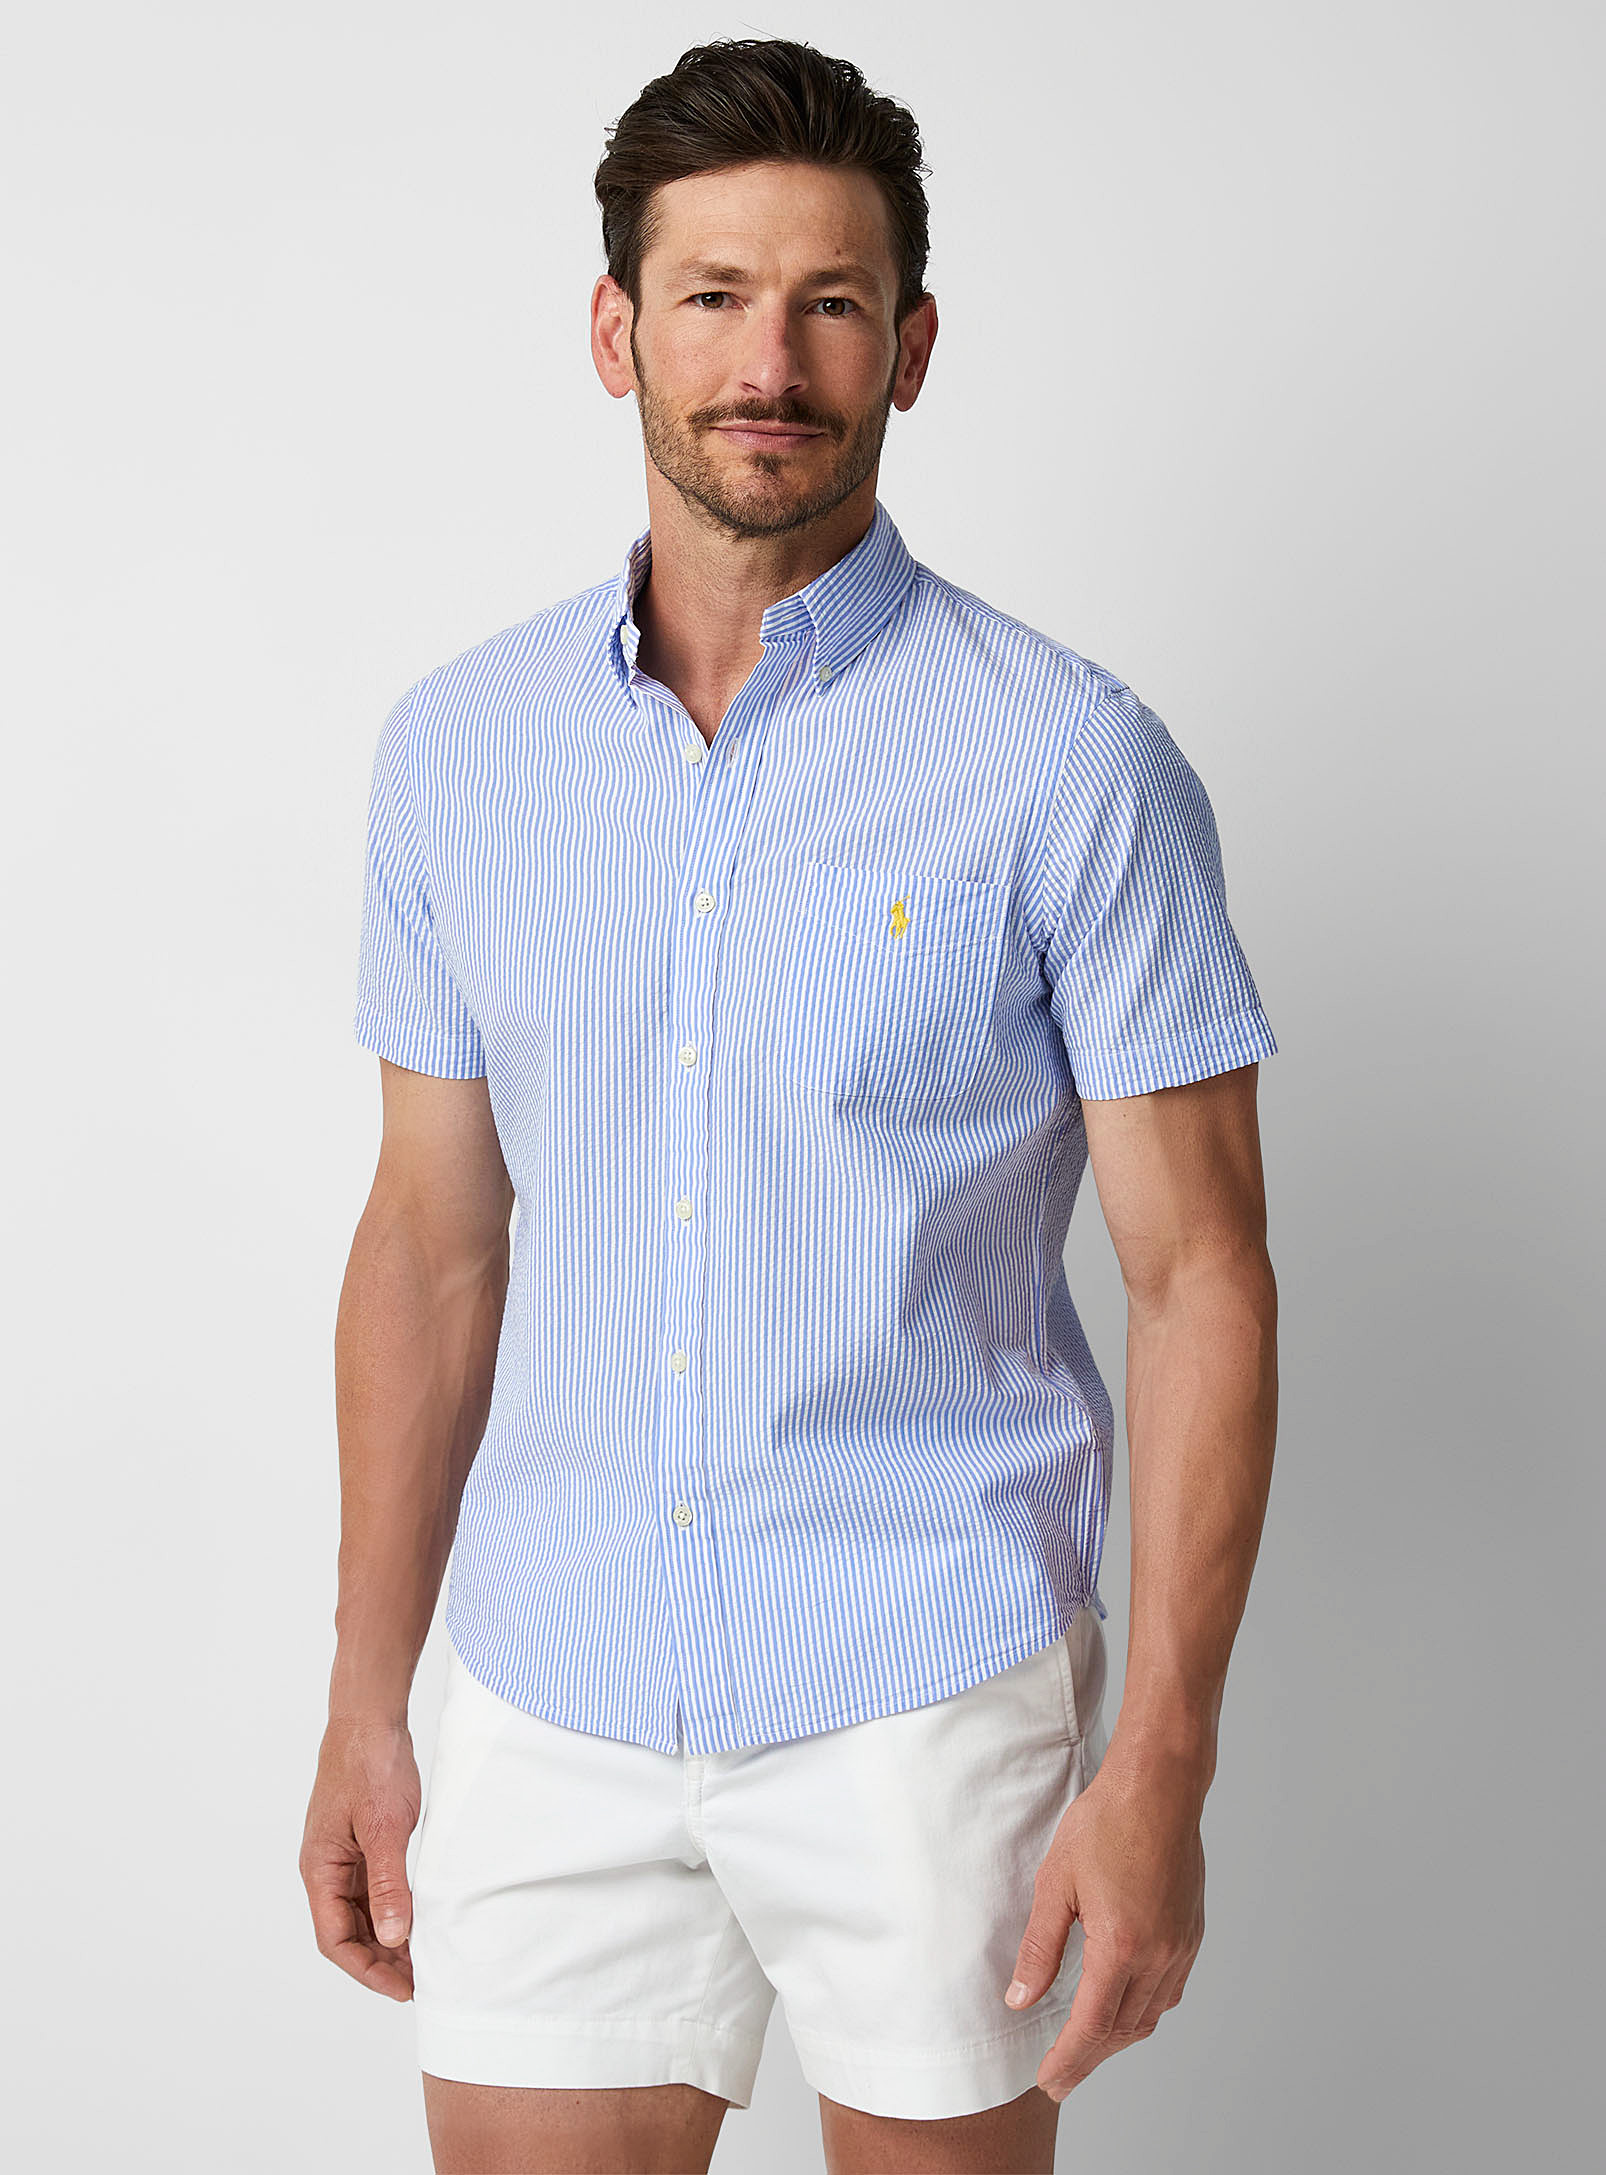 Polo Ralph Lauren - La chemise rayée en seersucker